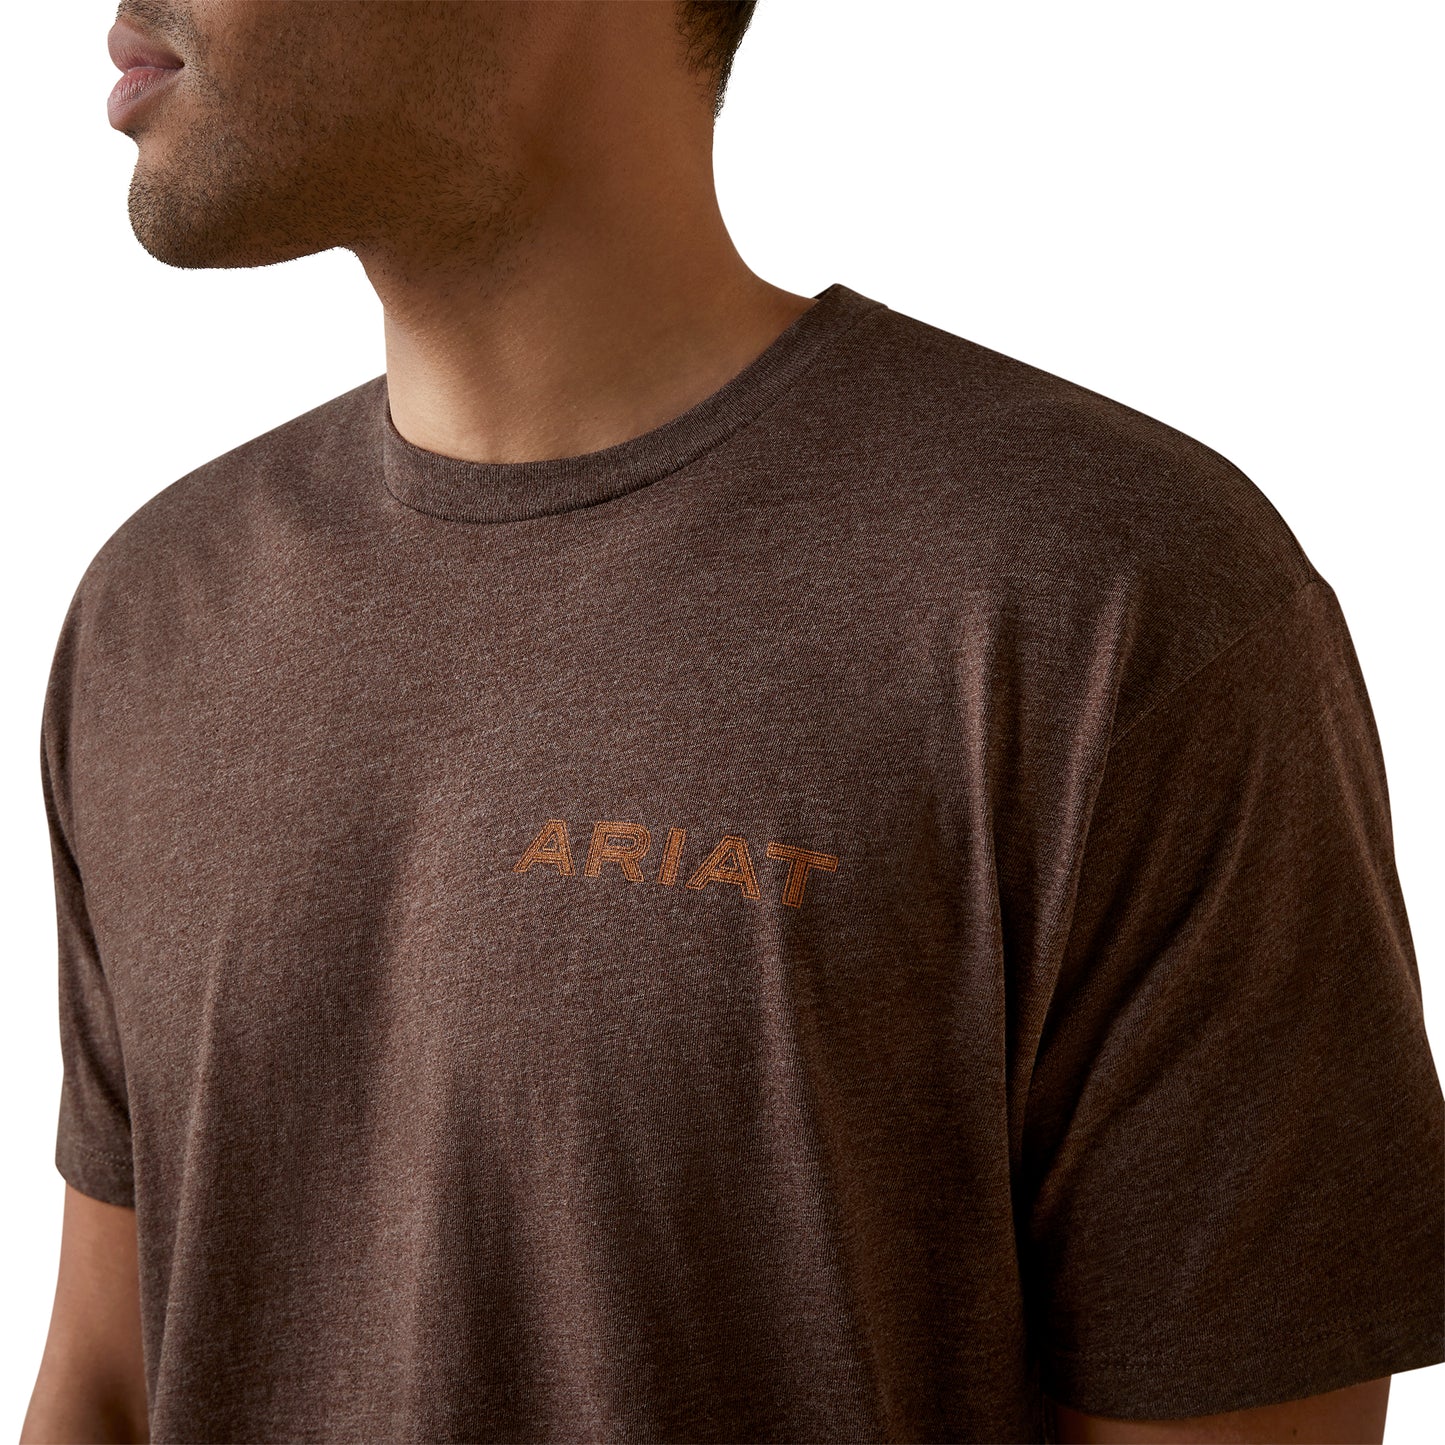 Ariat® Men's Shield Stitch Brown Heather T-Shirt 10045288